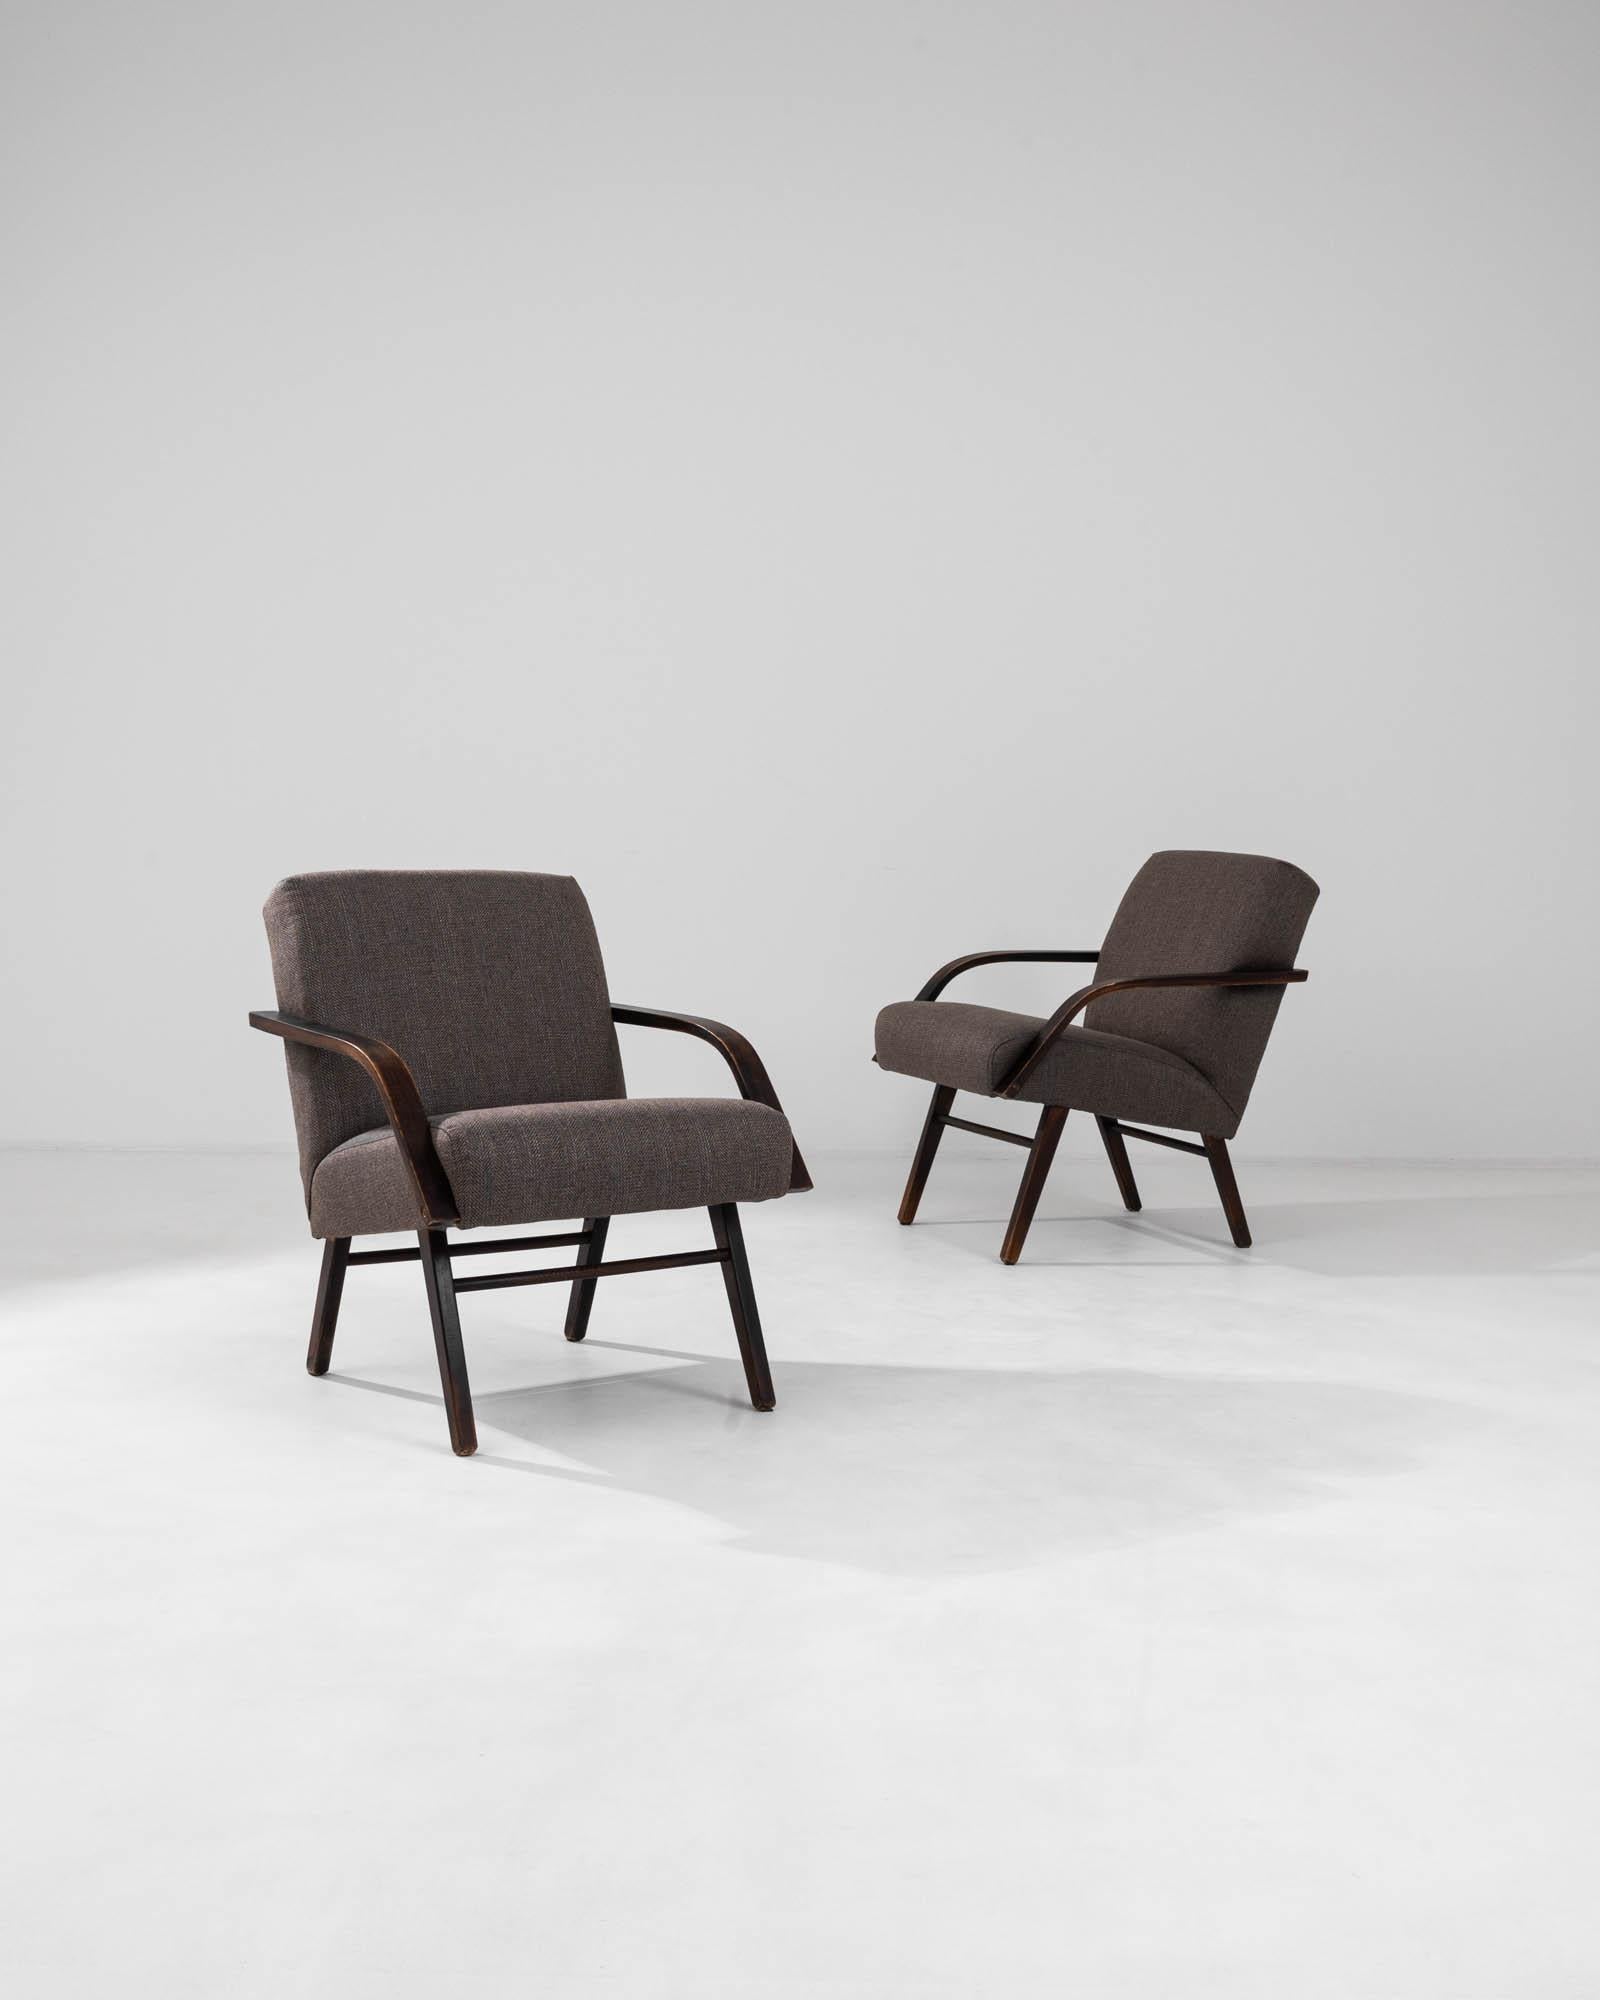 Découvrez le mélange harmonieux du confort et du design moderne du milieu du siècle avec cette captivante paire de fauteuils tchèques des années 1960 par TON. Ces pièces emblématiques présentent une forme épurée, avec des cadres fabriqués dans un